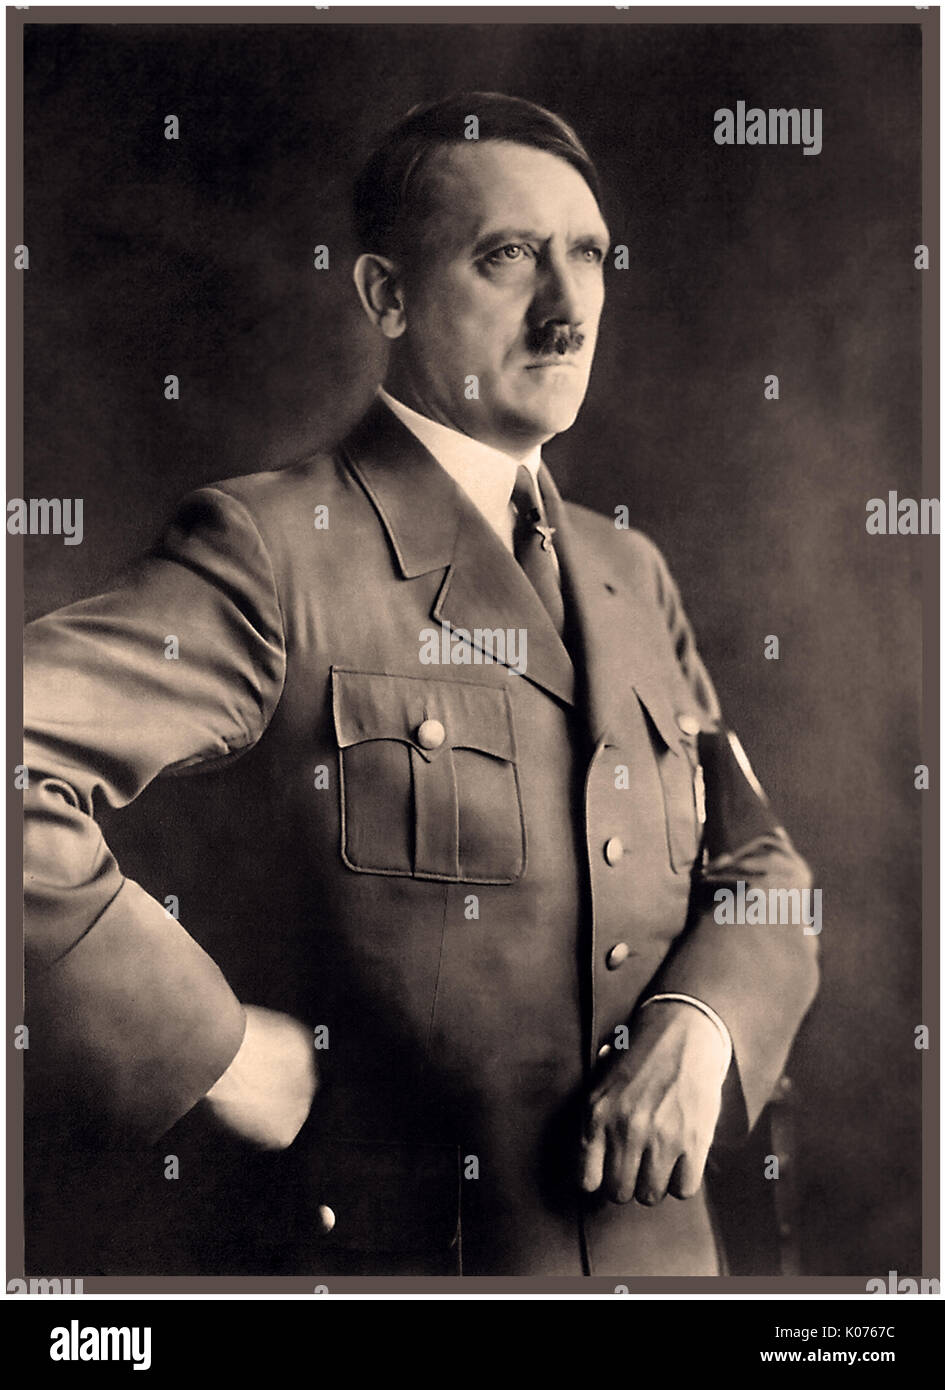 Ritratto di Adolf Hitler in uniforme militare con la fascia da braccio con la svastica ritratto del Führer Adolf Hitler da Heinrich Hoffman (fotografo personale) nel Reichstag di Berlino Germania 1930 Foto Stock